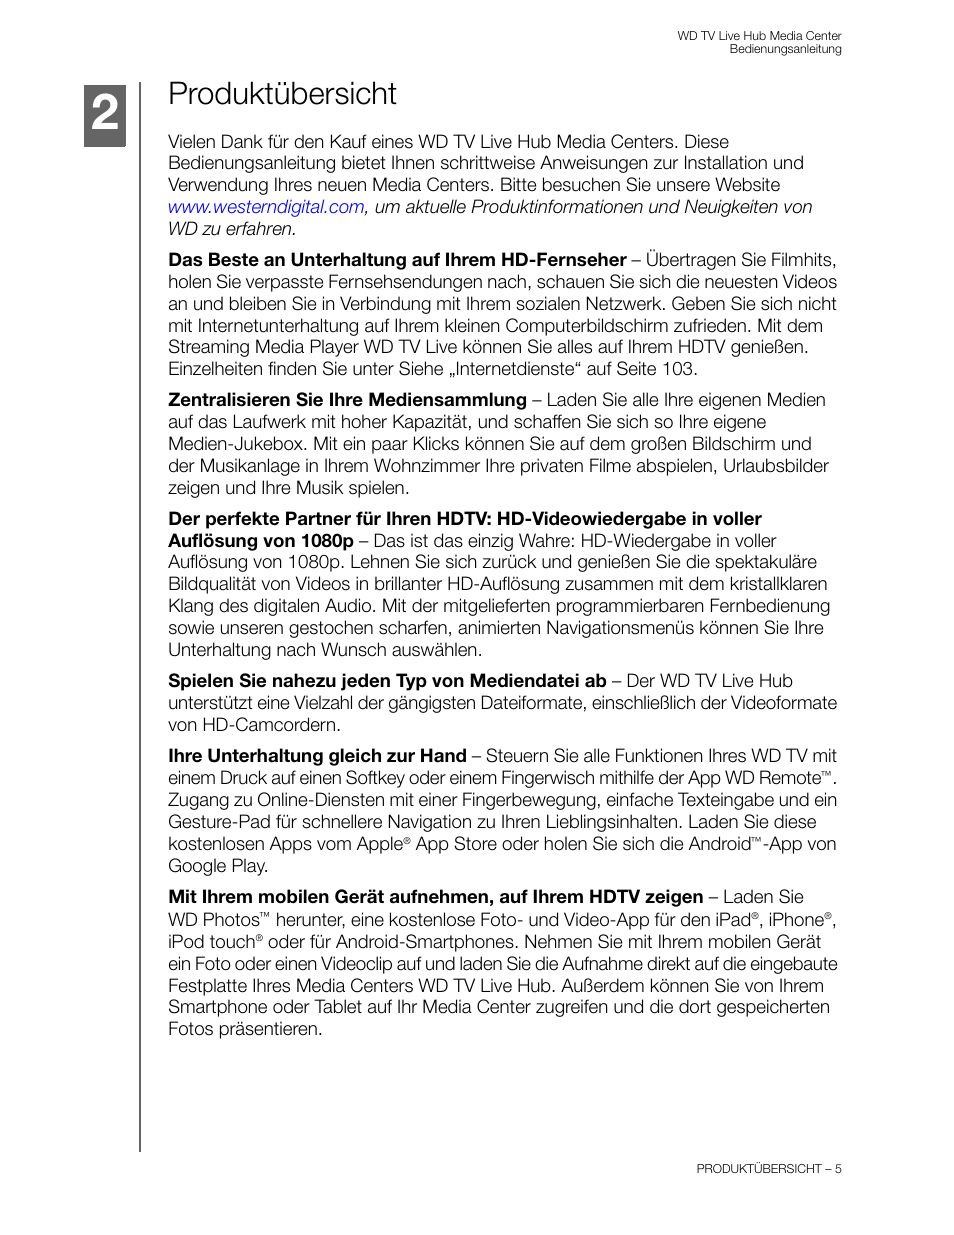 Produktübersicht | Western Digital WD TV Live Hub Media Center User Manual Benutzerhandbuch | Seite 10 / 261